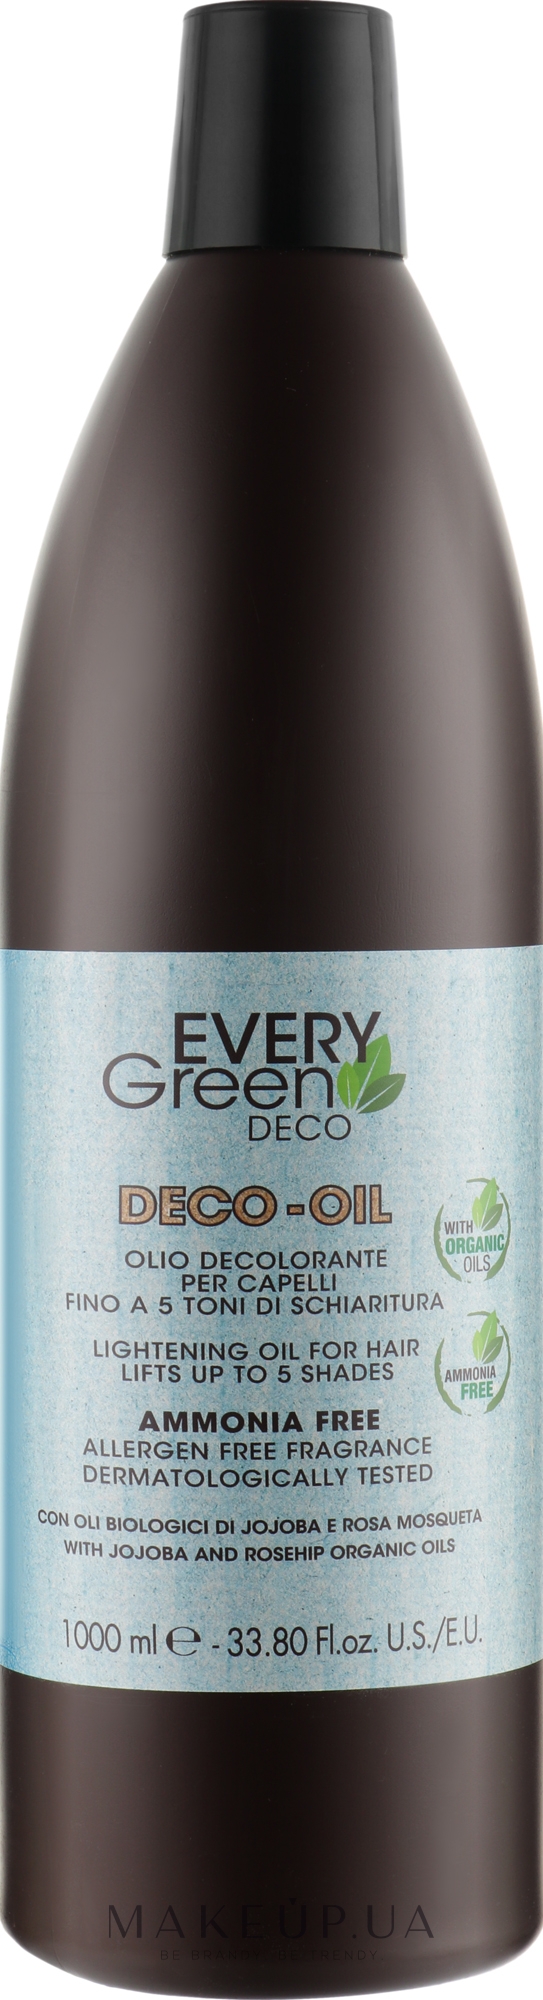 Осветляющее масло для волос с жожоба - EveryGreen Deco-Oil — фото 1000ml